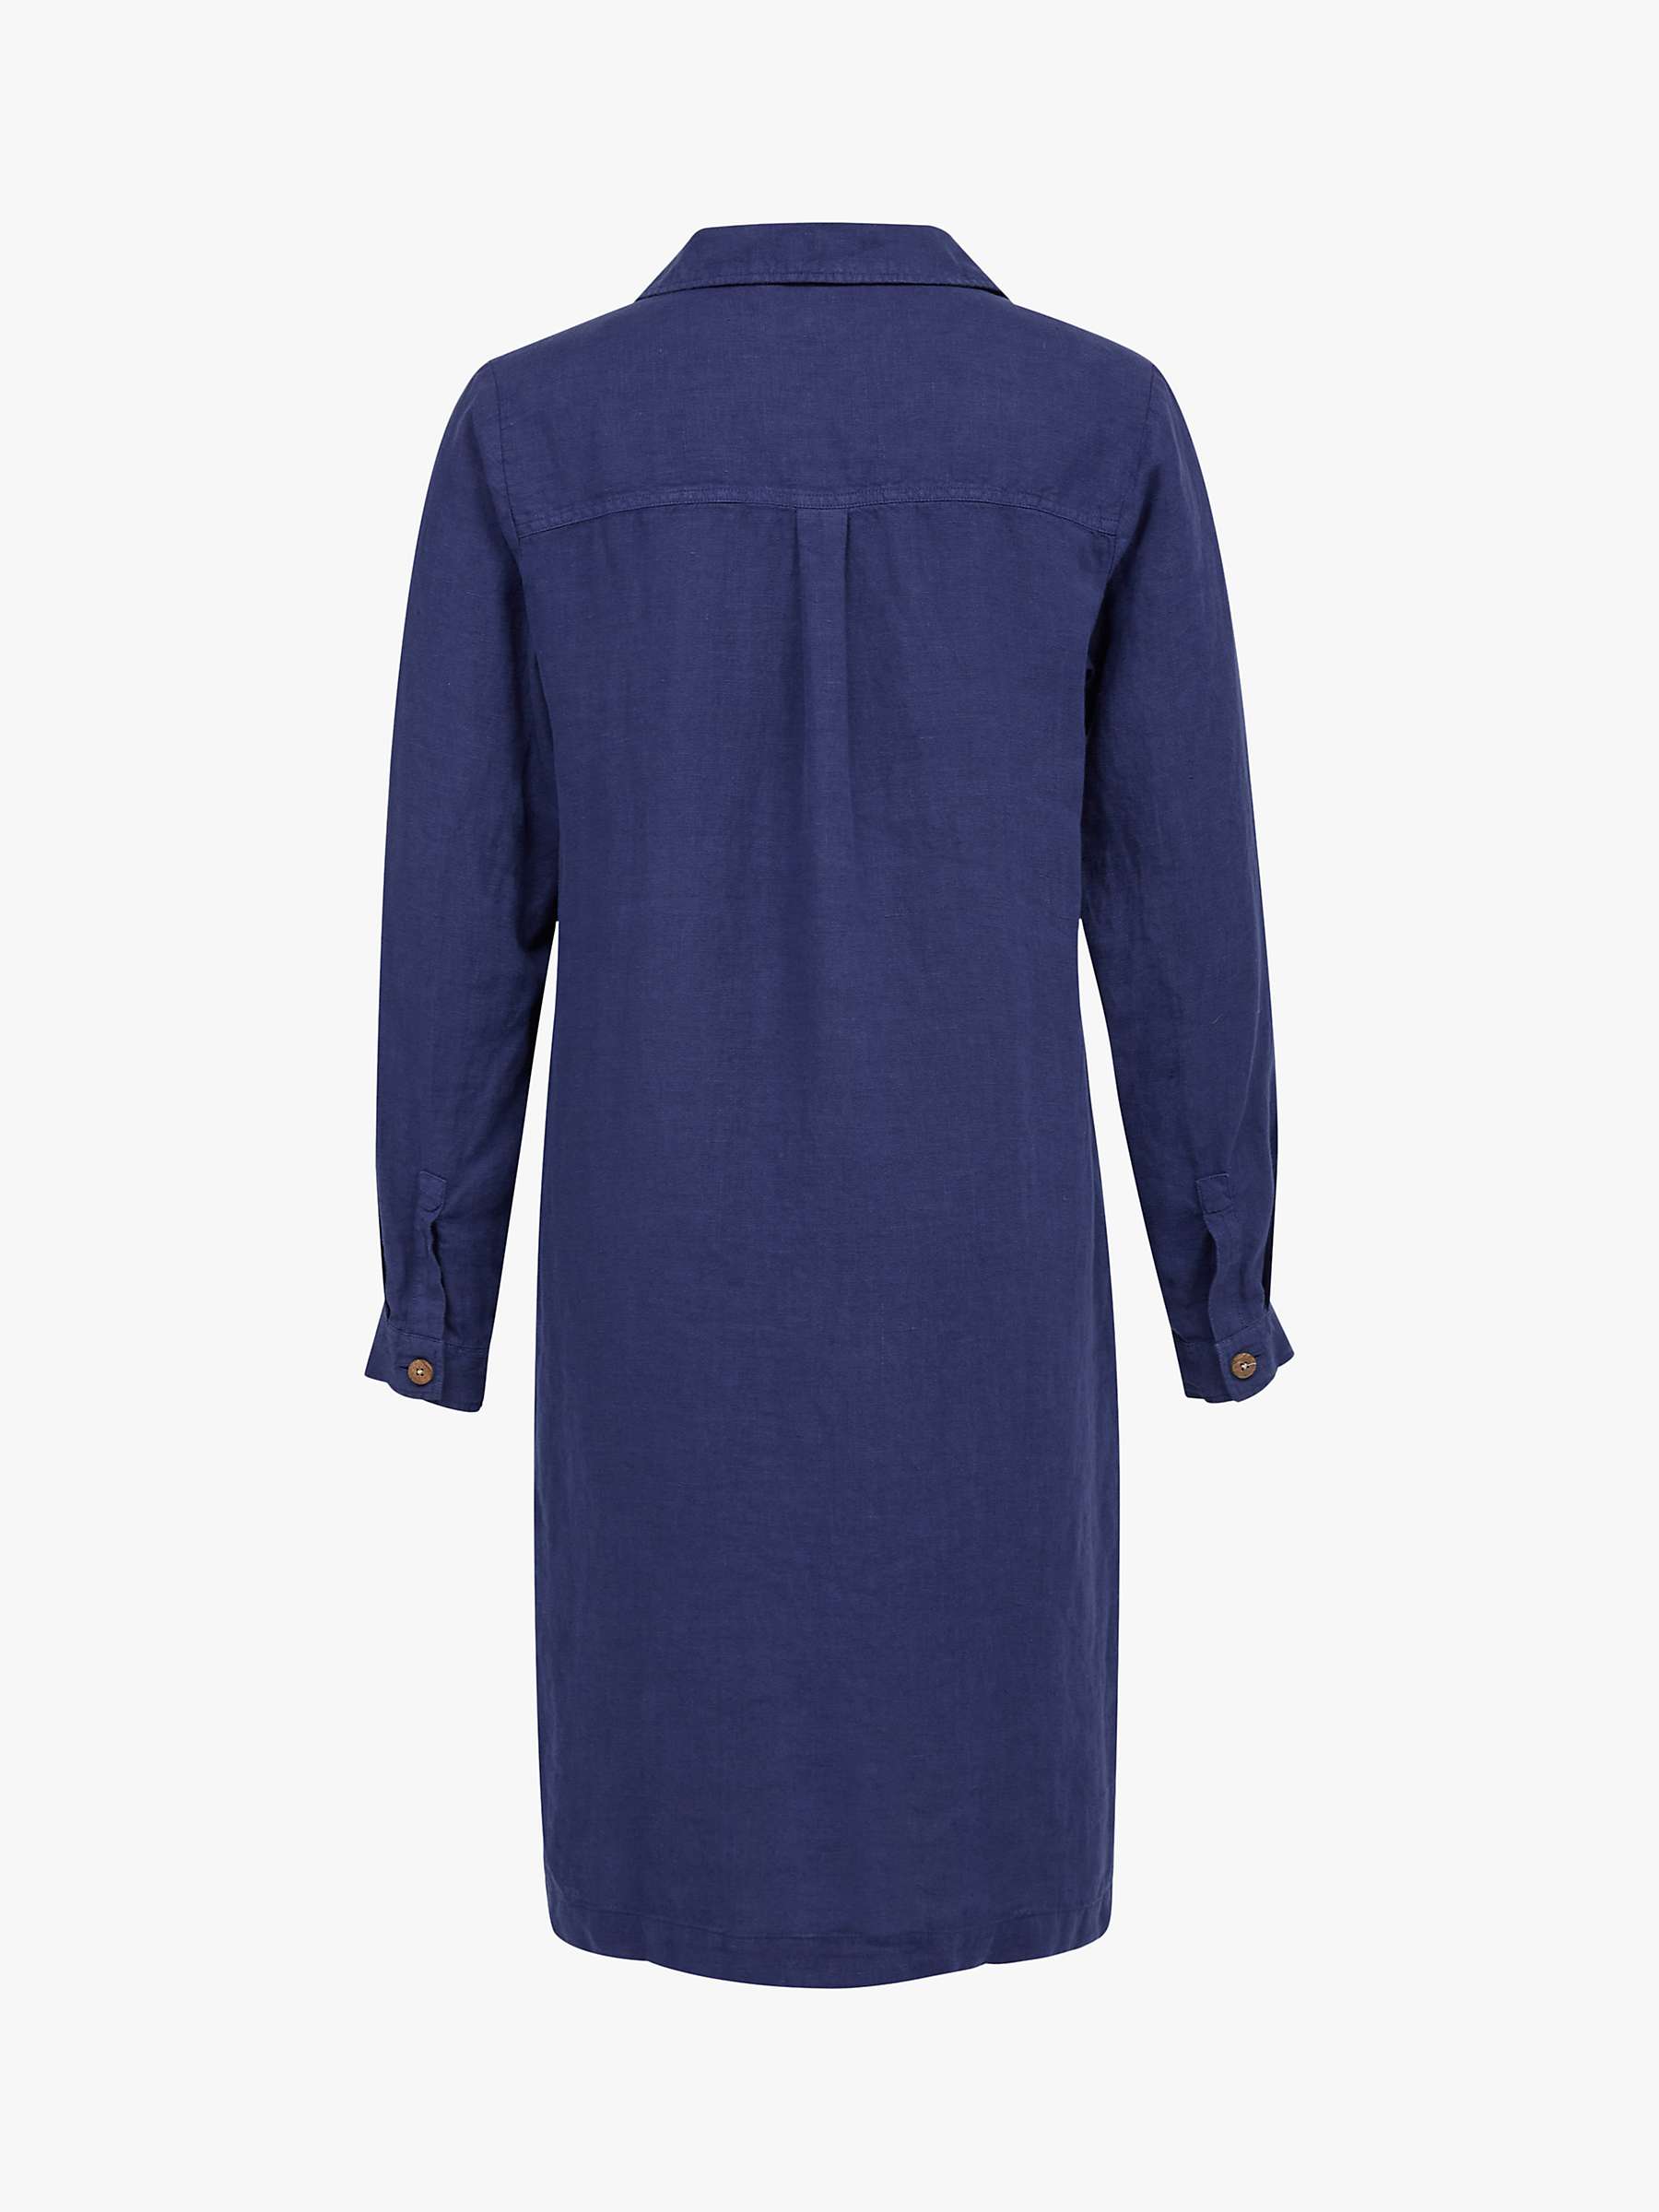 Buy Celtic & Co. Linen Half Placket Dress, Blue Ink Online at johnlewis.com